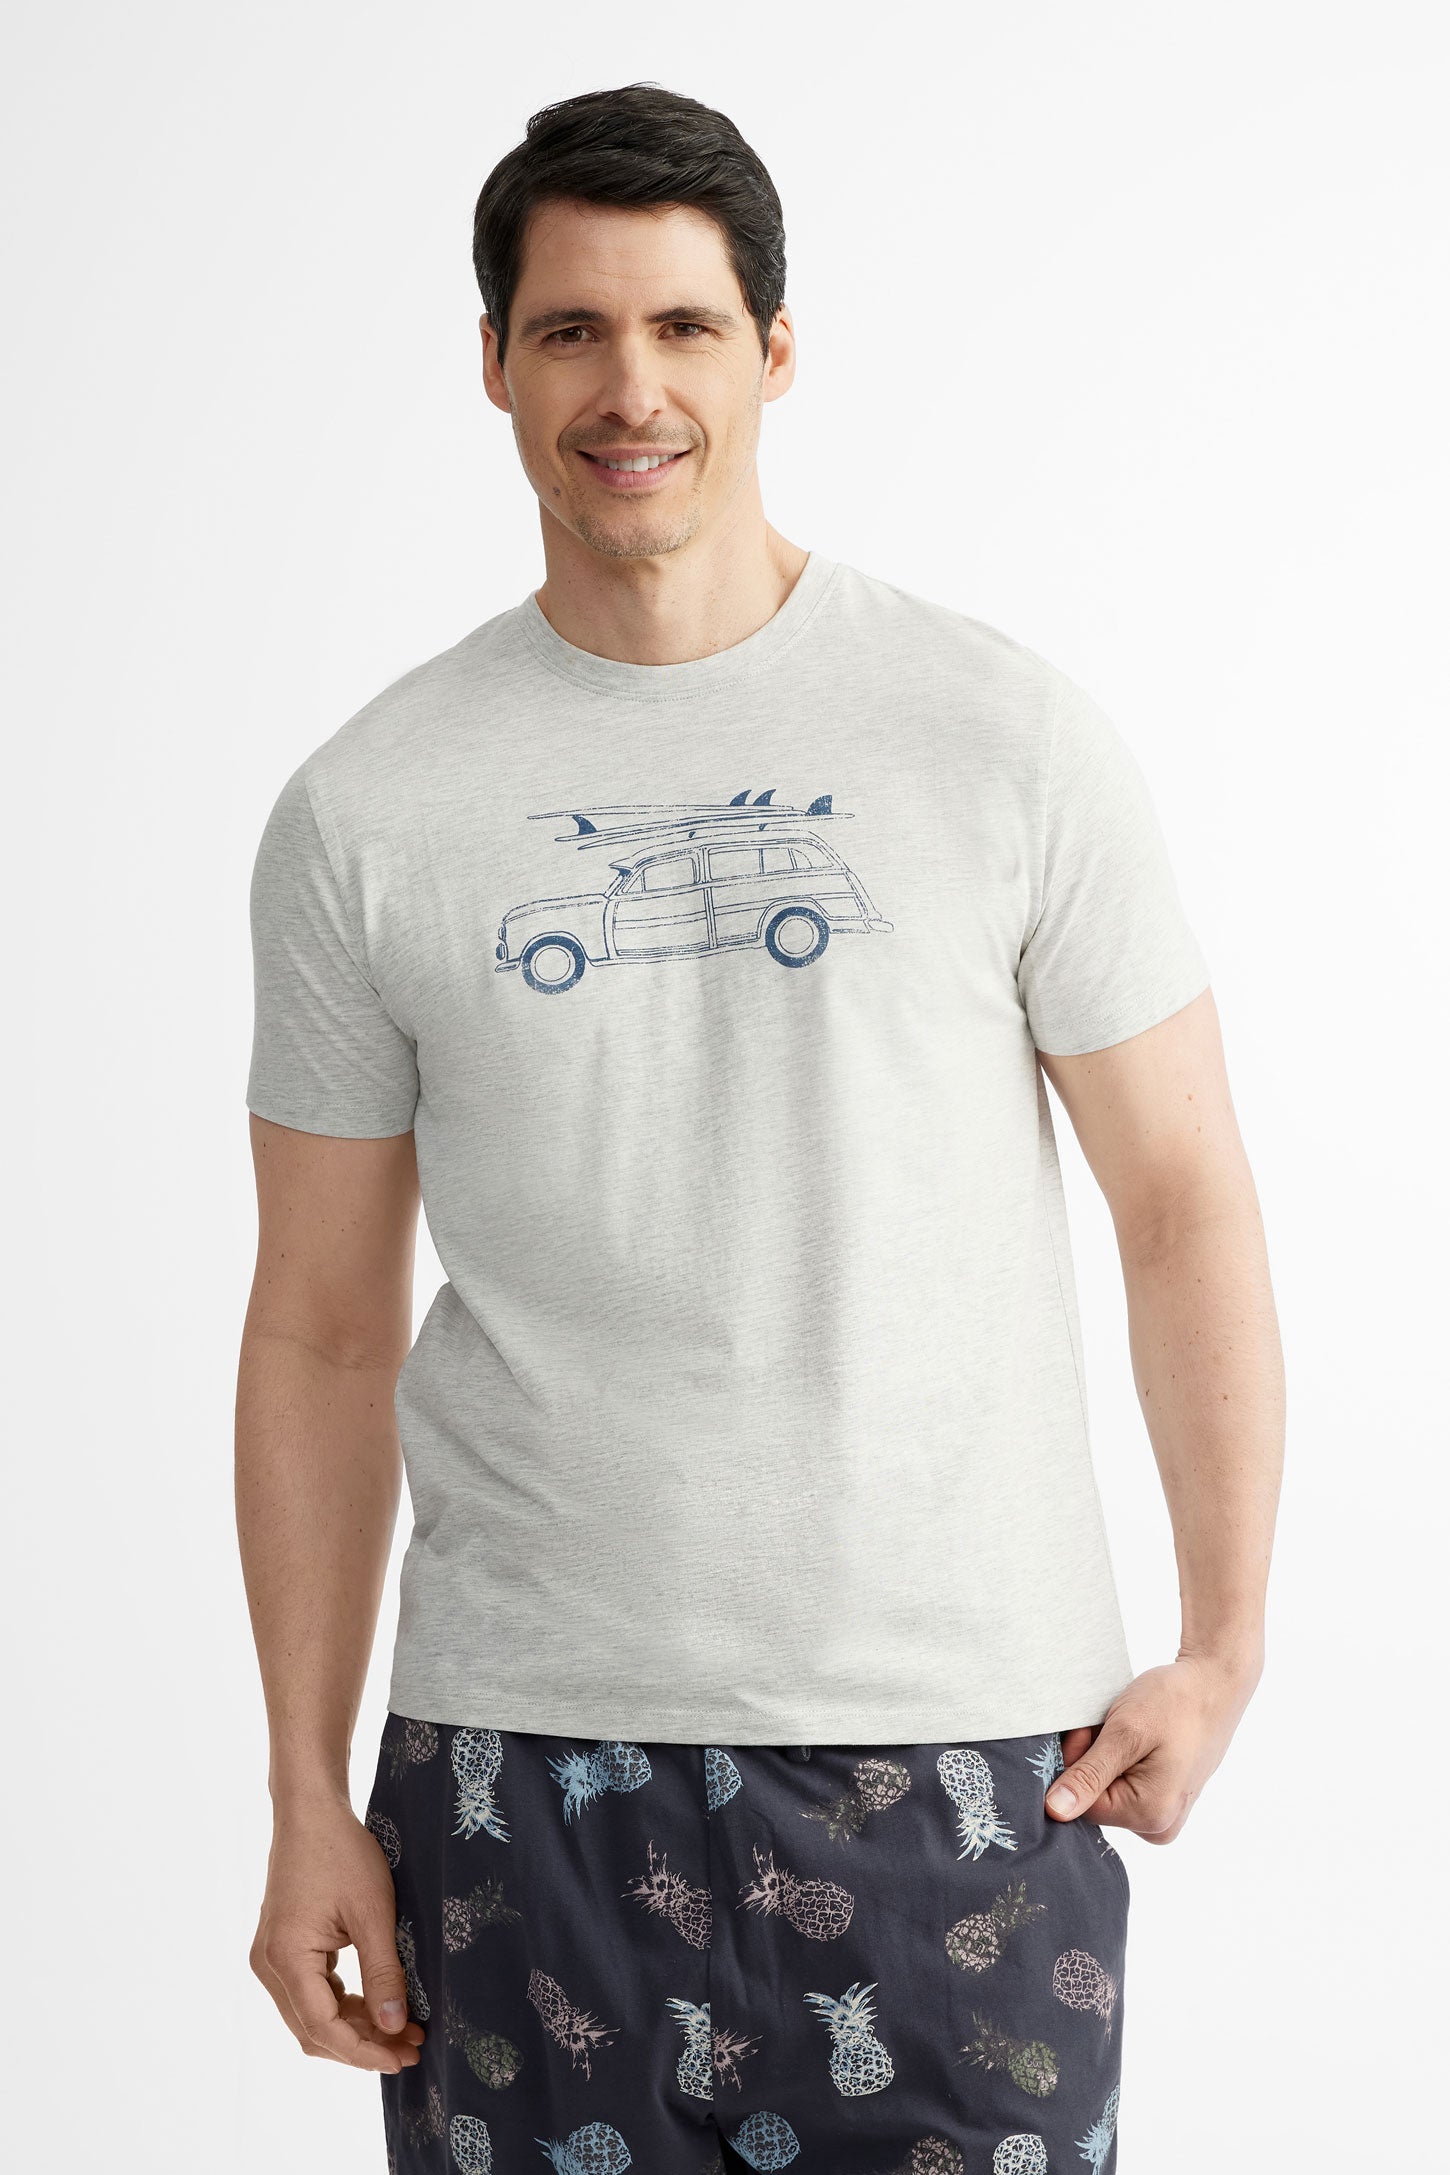 T-shirt pyjama en coton, 2/40$ - Homme && GRIS MIXTE